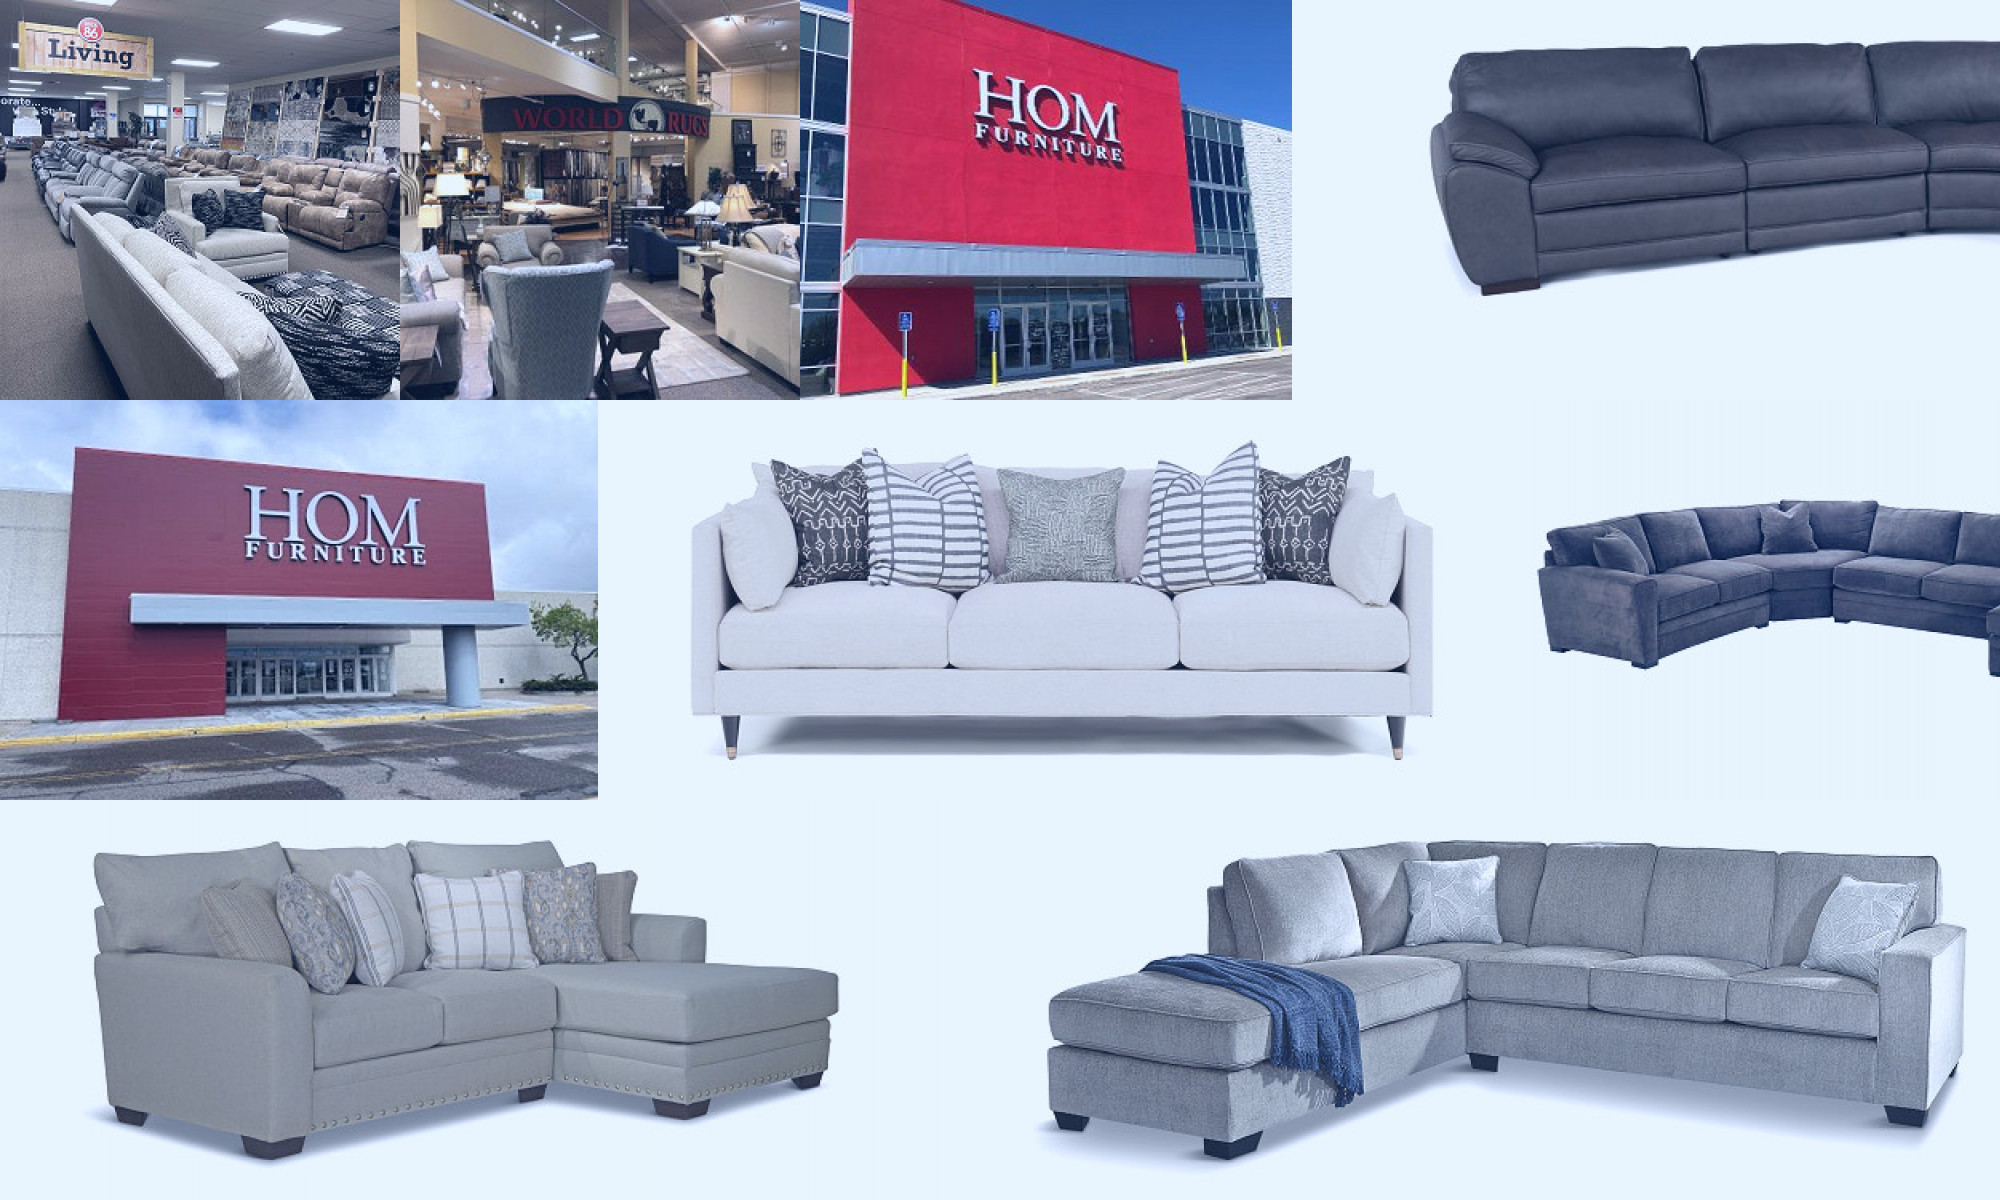 hom furniture